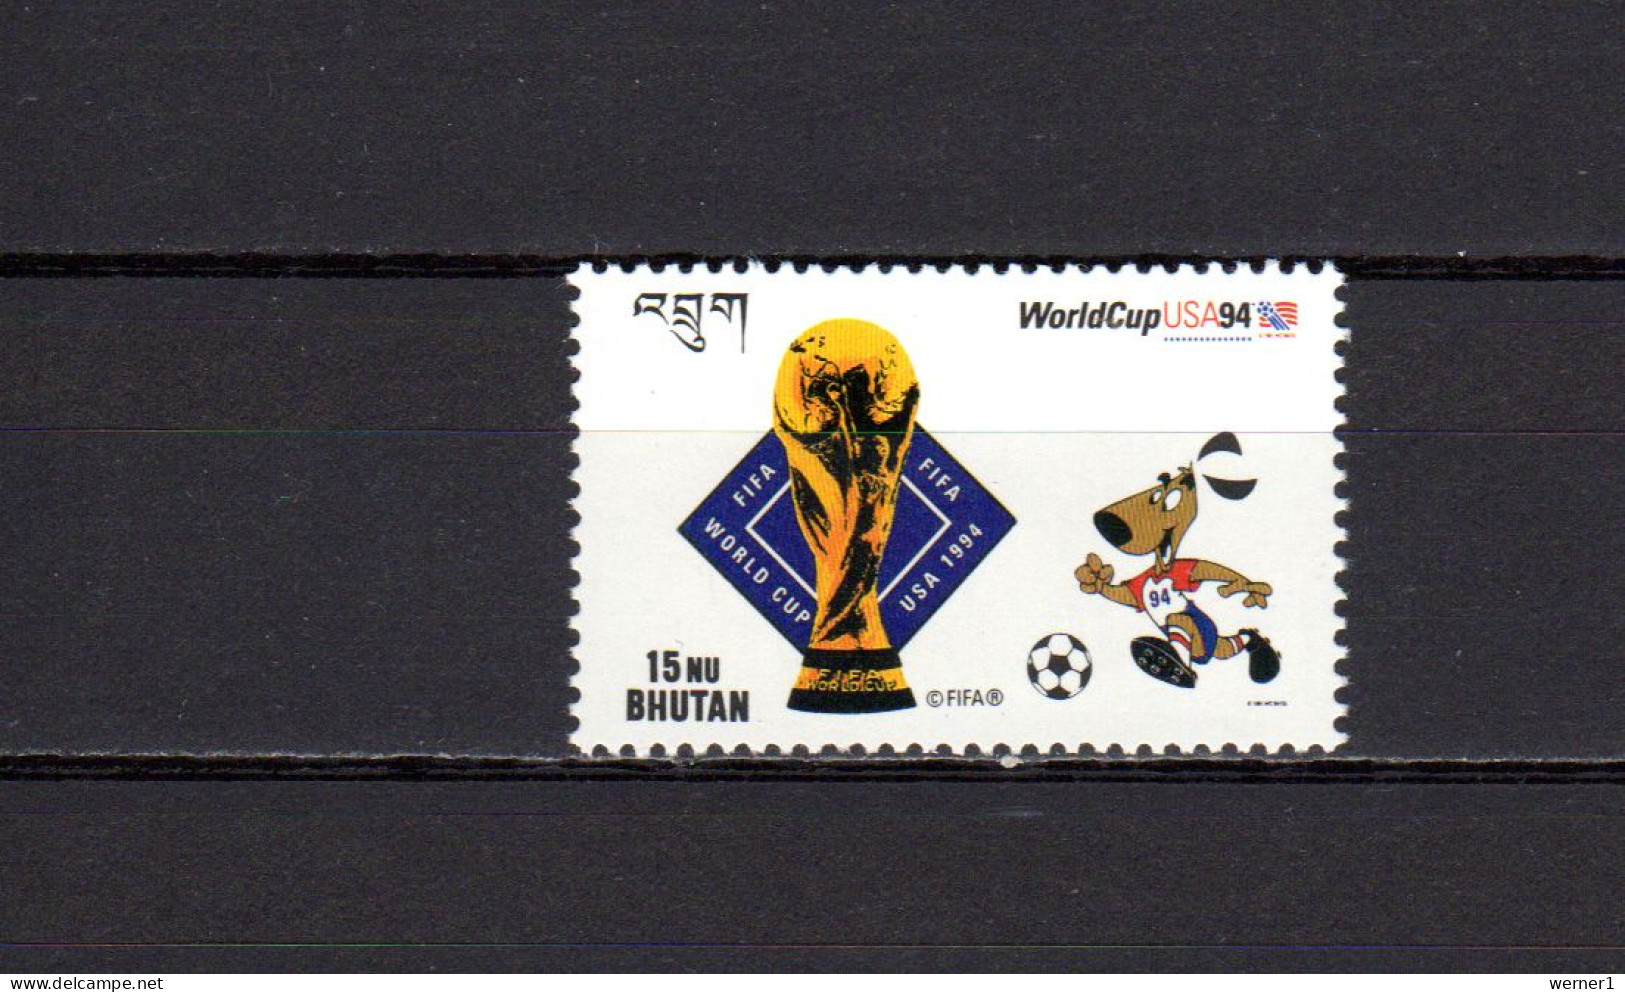 Bhutan 1994 Football Soccer World Cup Stamp MNH - 1994 – Estados Unidos